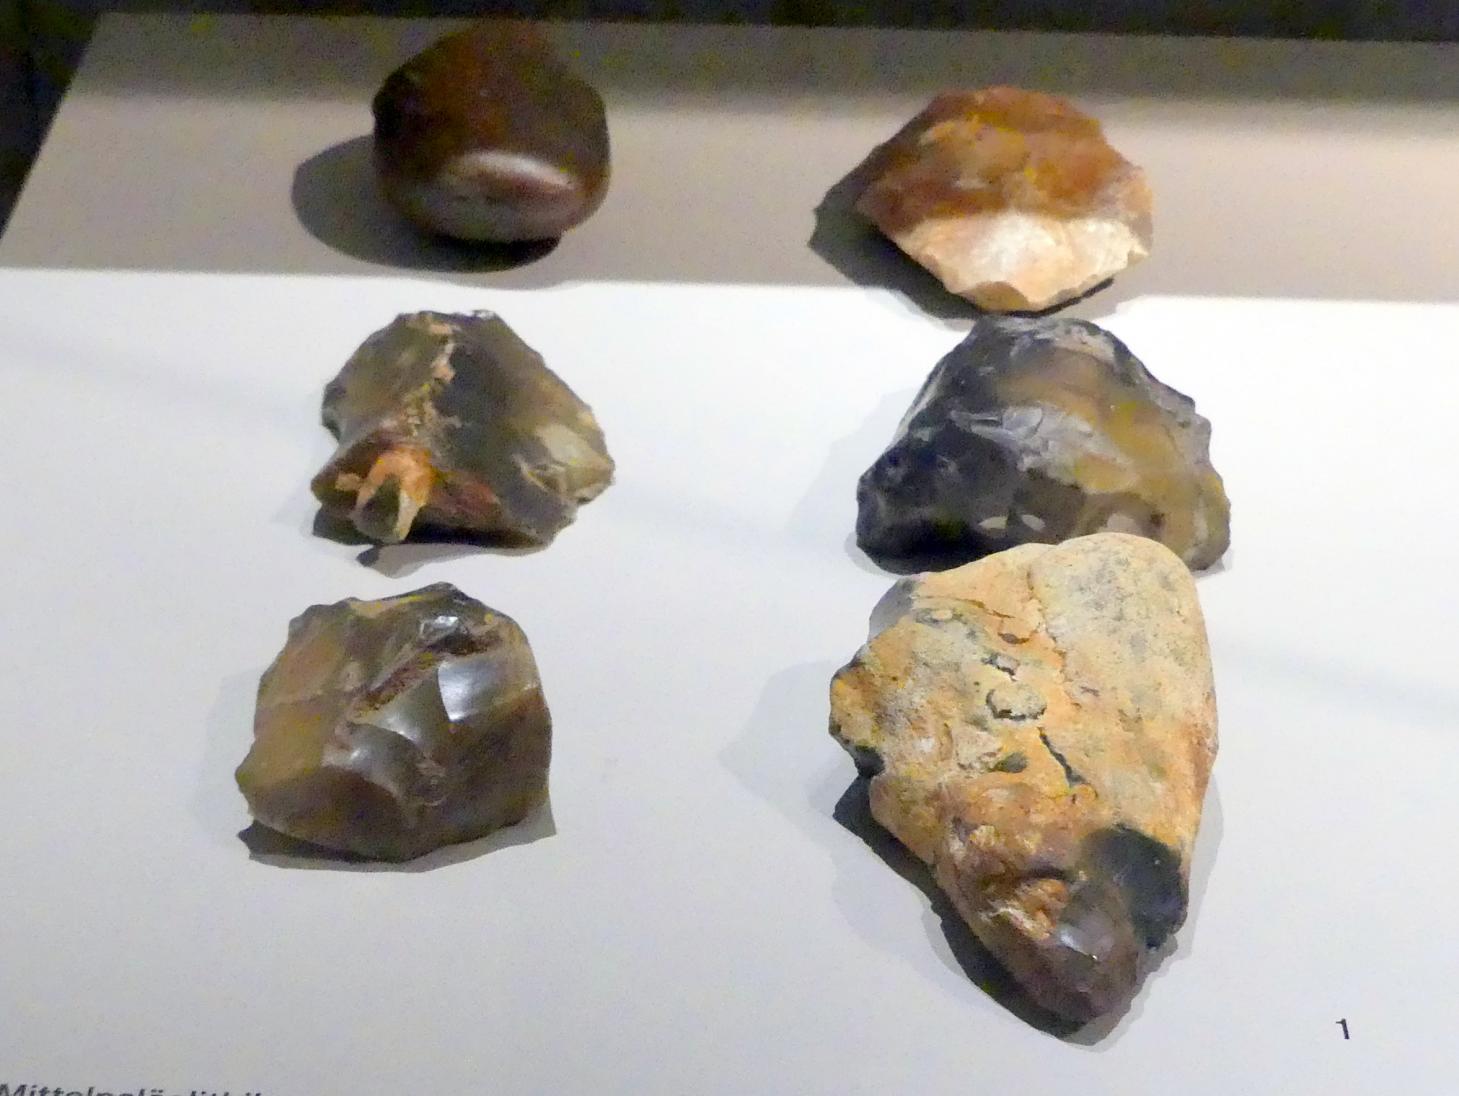 Abschlaggeräte, Frühpaläolithikum, 600000 - 350000 v. Chr., 600000 - 350000 v. Chr., Bild 1/2